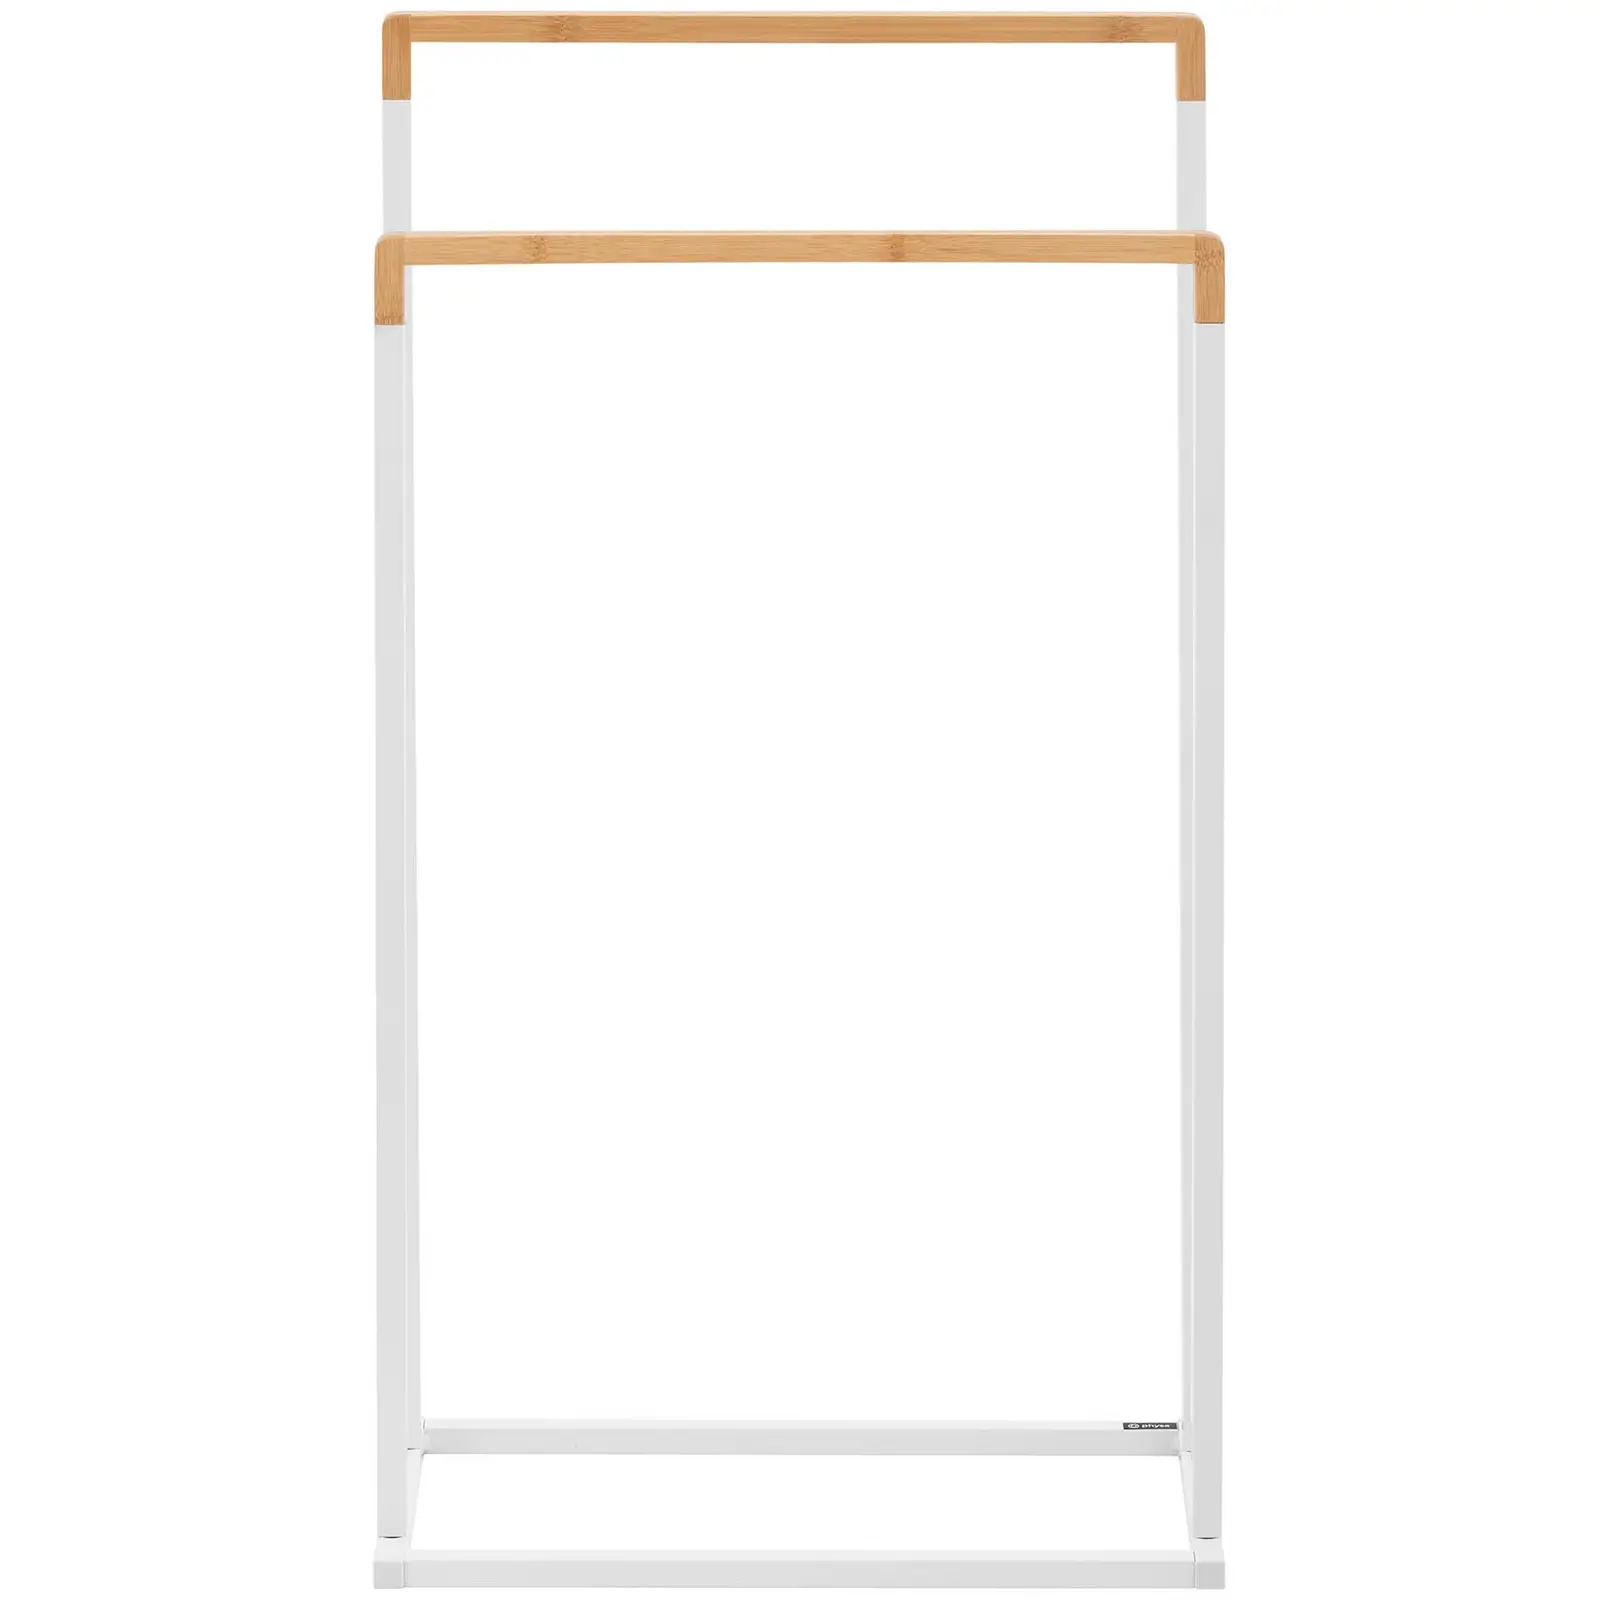 Porte serviette sur pied - 2 barres - Bambou/Blanc